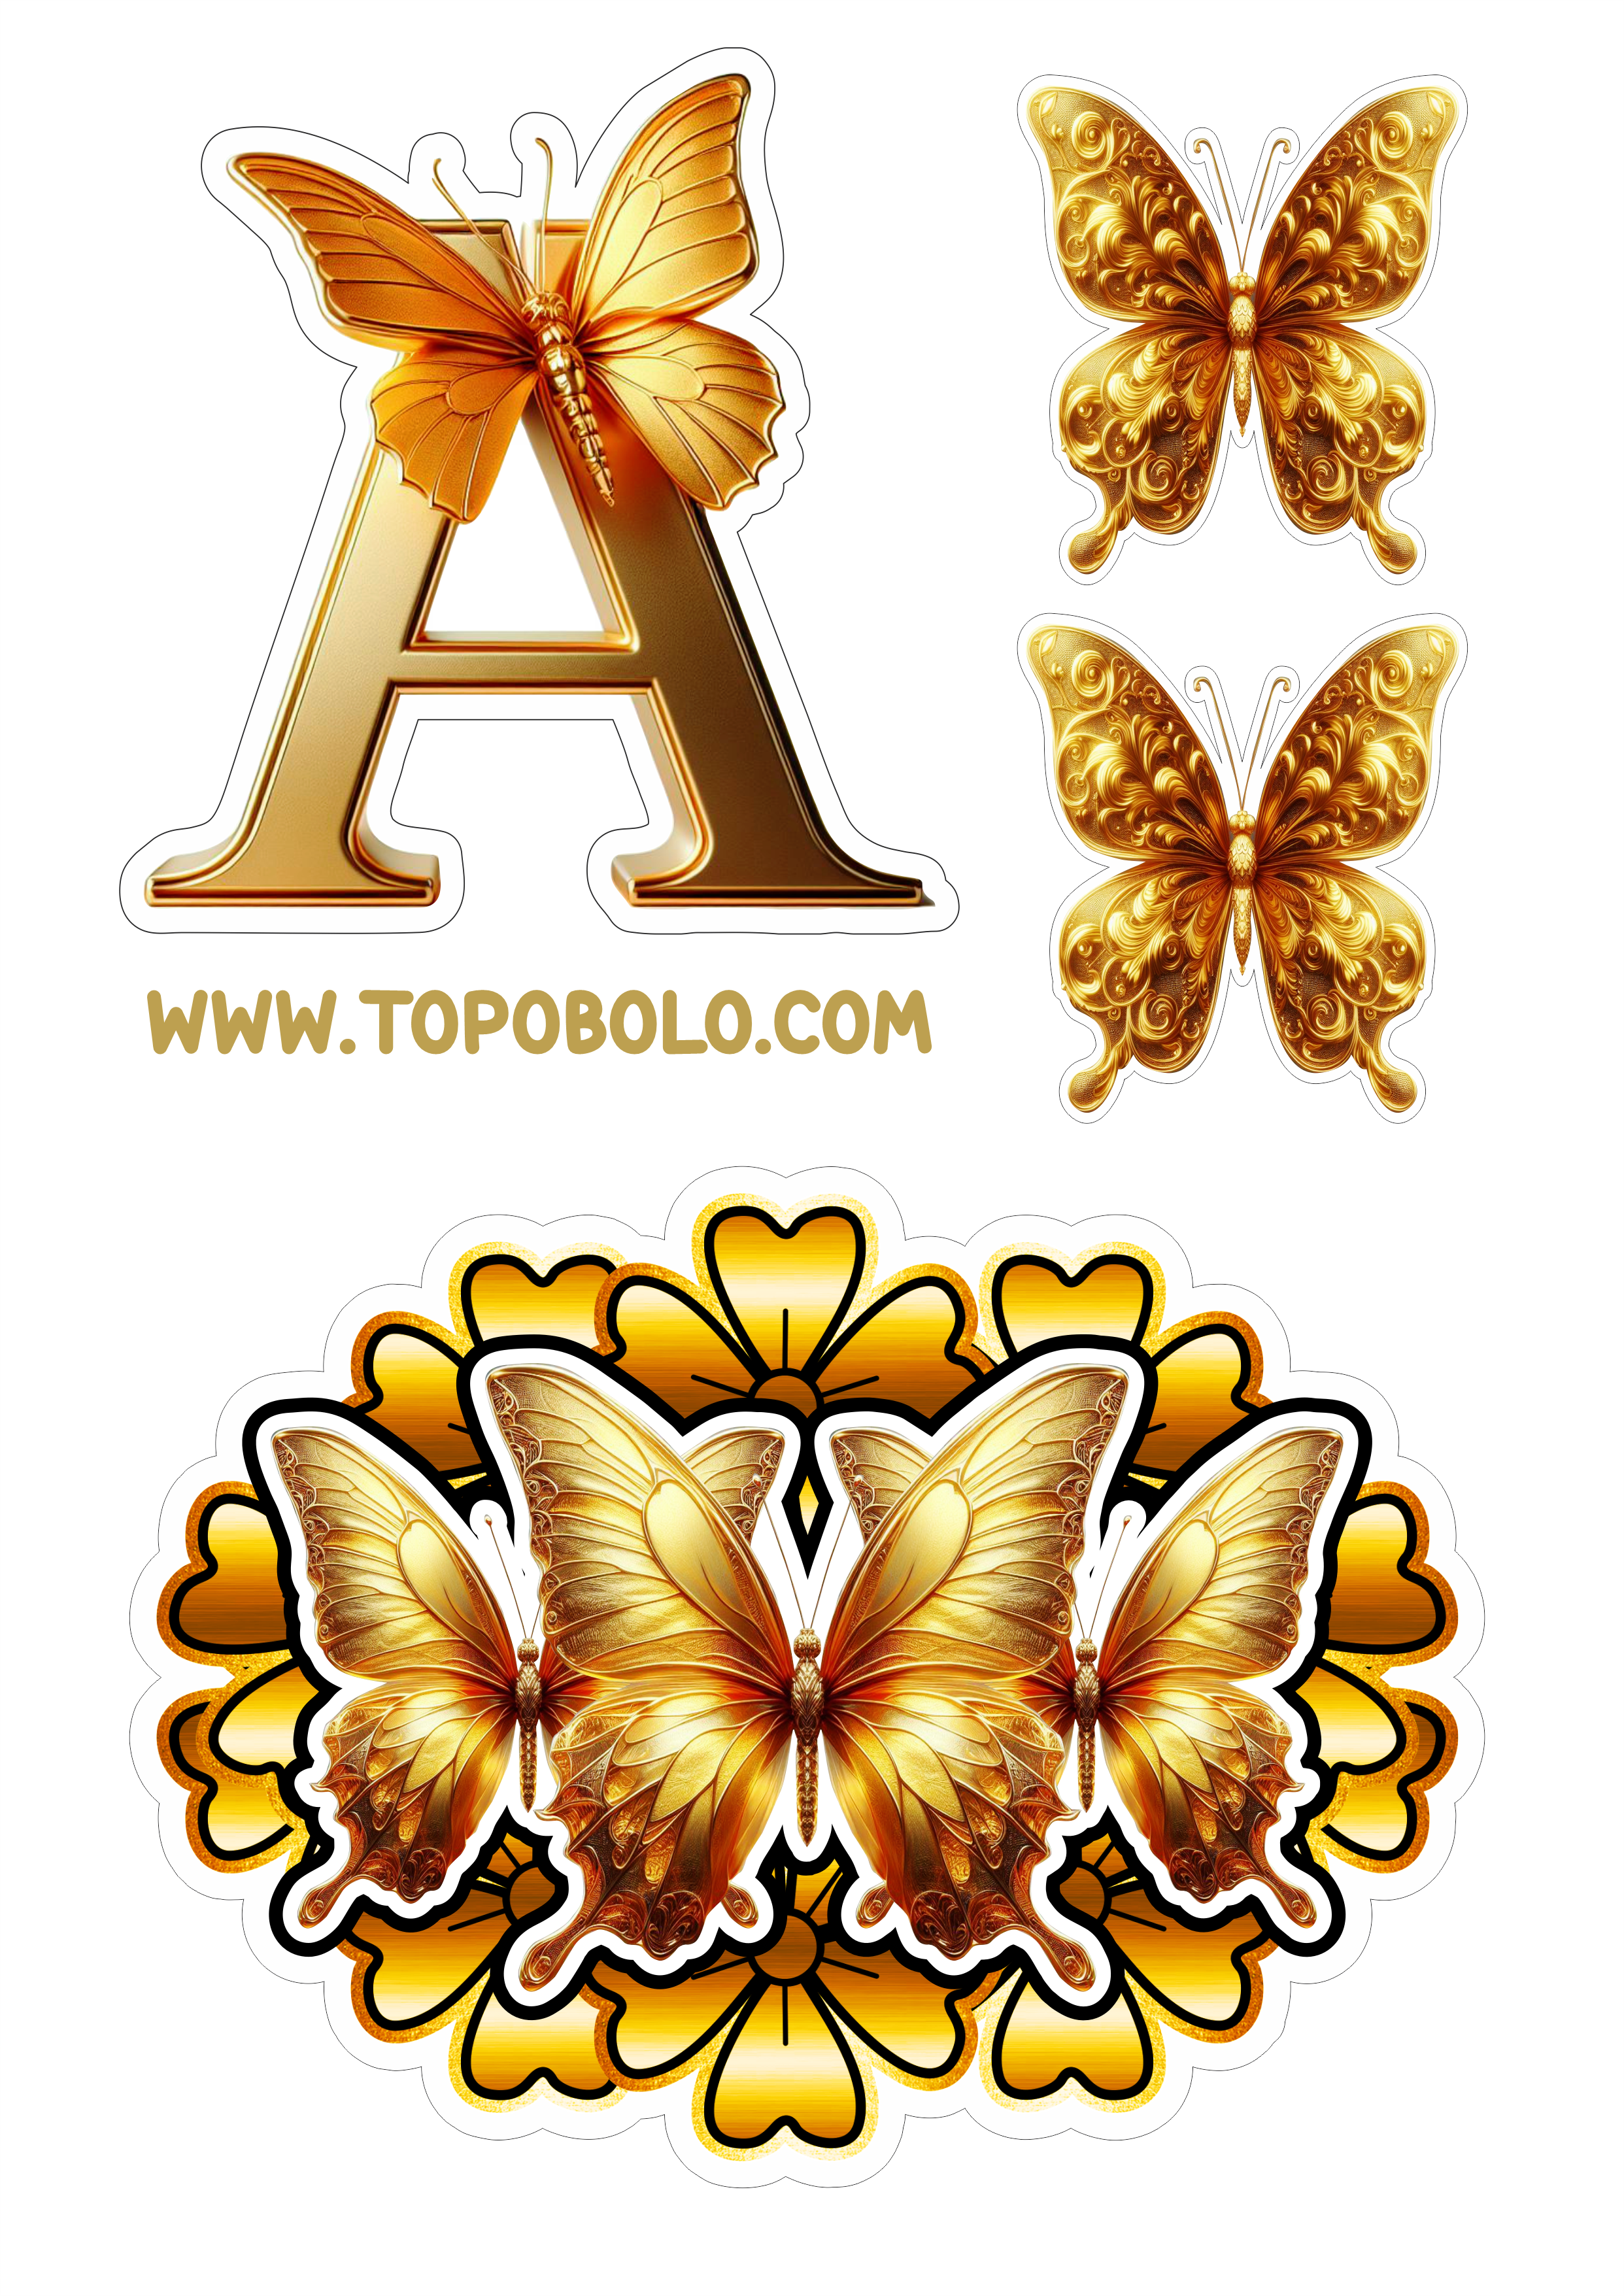 Topo de bolo letras douradas com borboletas e flores aniversário personalizado grátis png